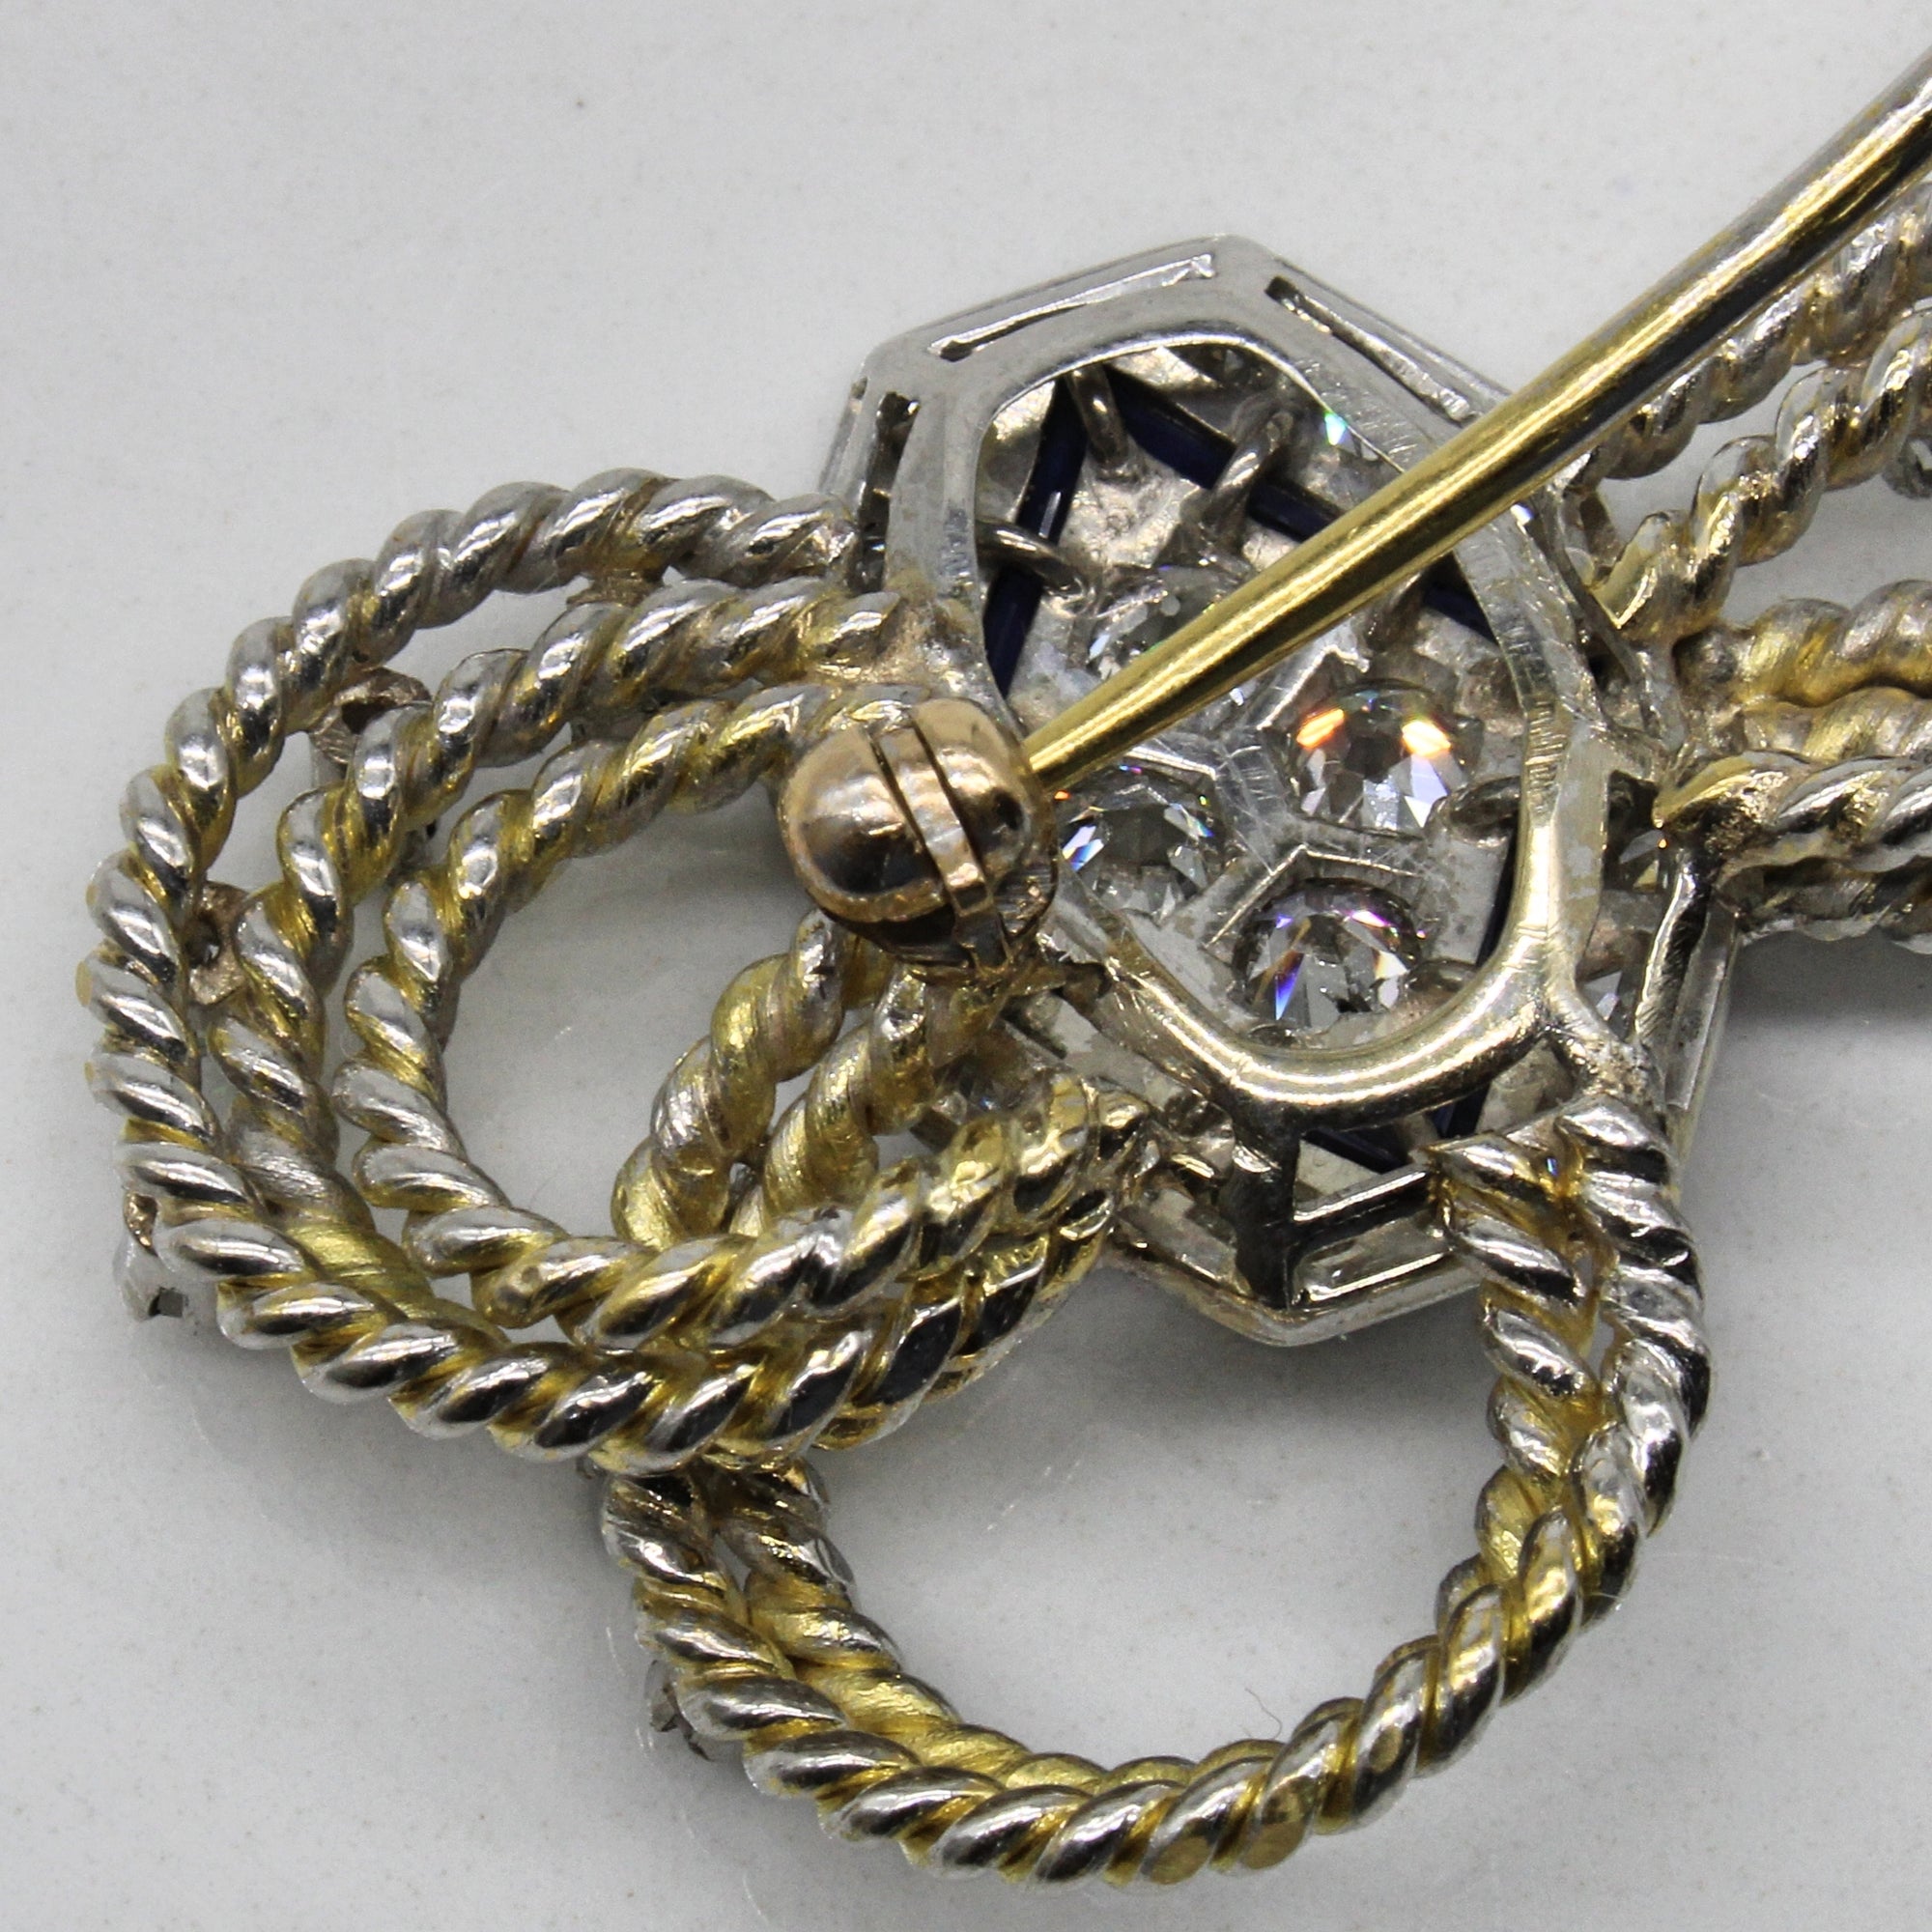 Refabricated Art Deco Diamond & Sapphire Brooch | 1.00ctw, 0.07ctw |